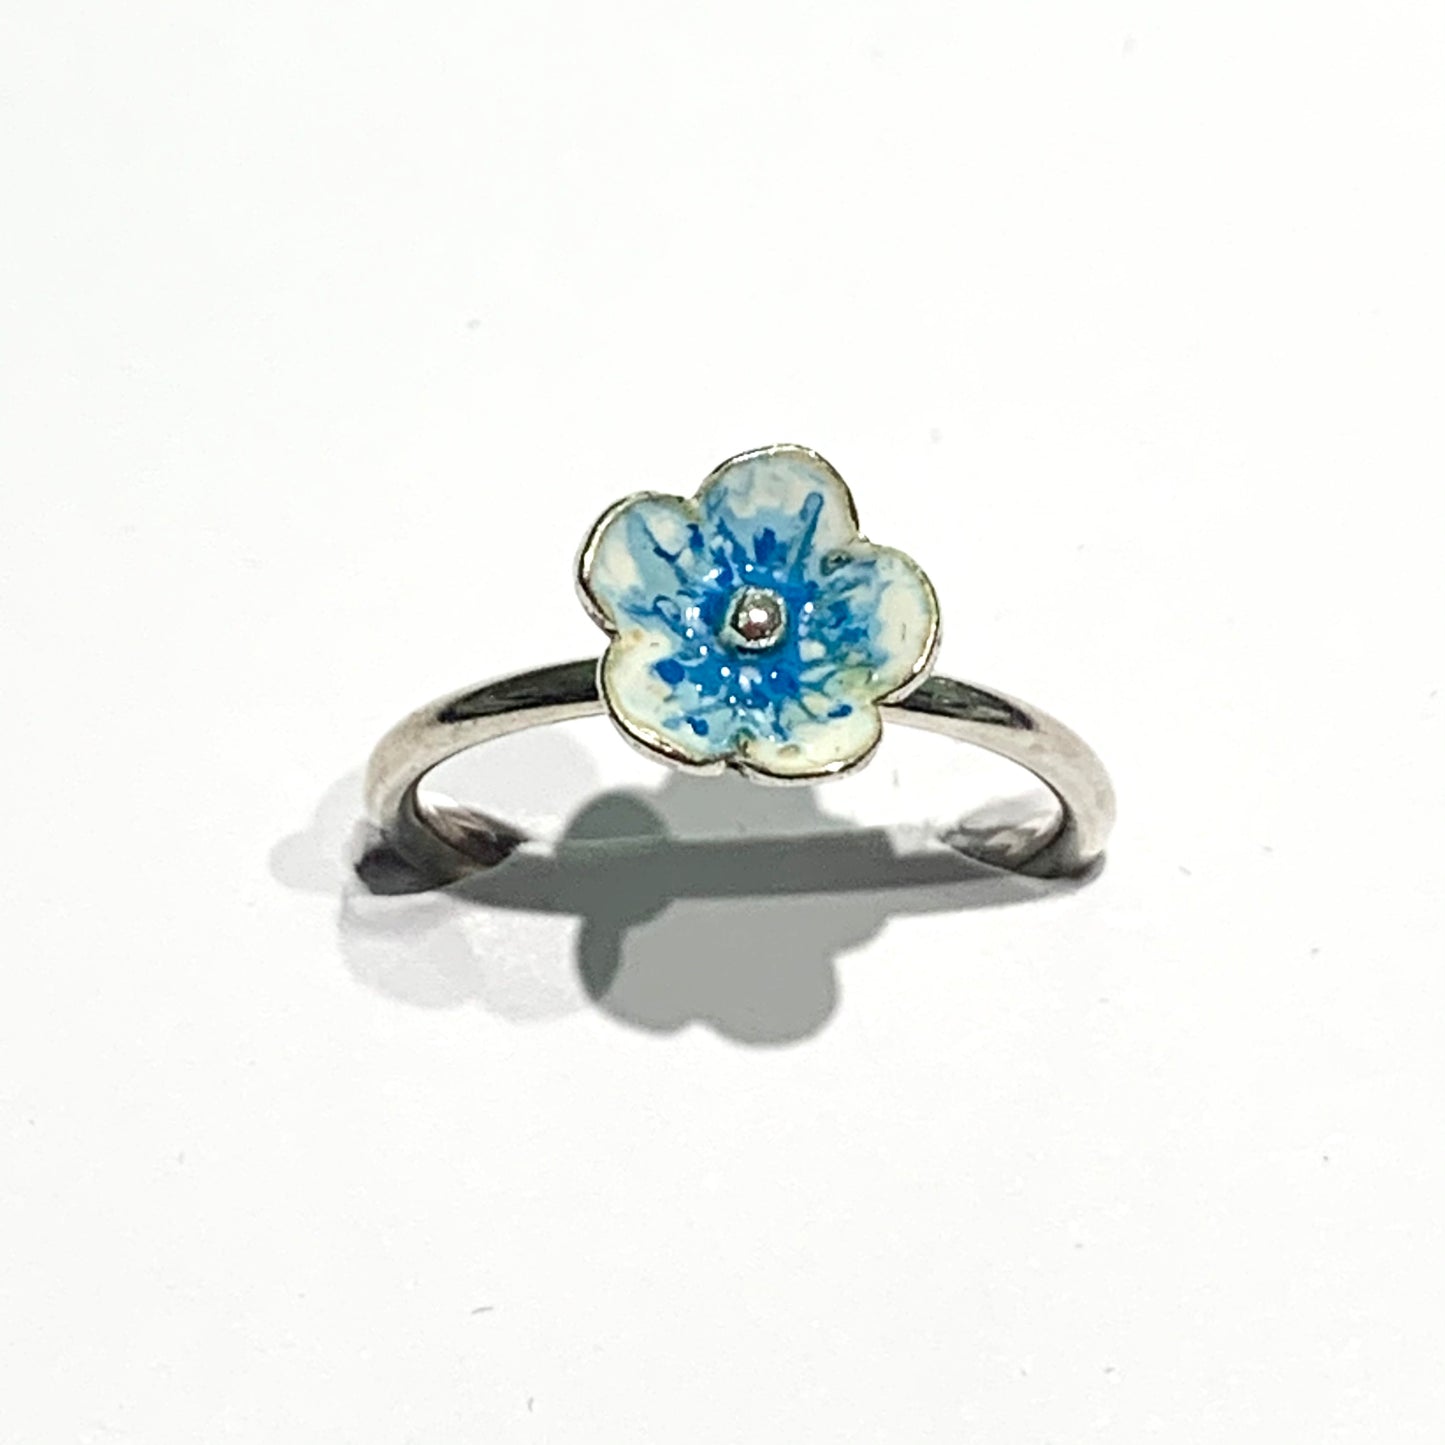 Anello in argento con fiore ricoperto da smalto naturale azzurro.  Dimensioni fiore 0,8 cm.  Misura regolabile da 13 a 15. 